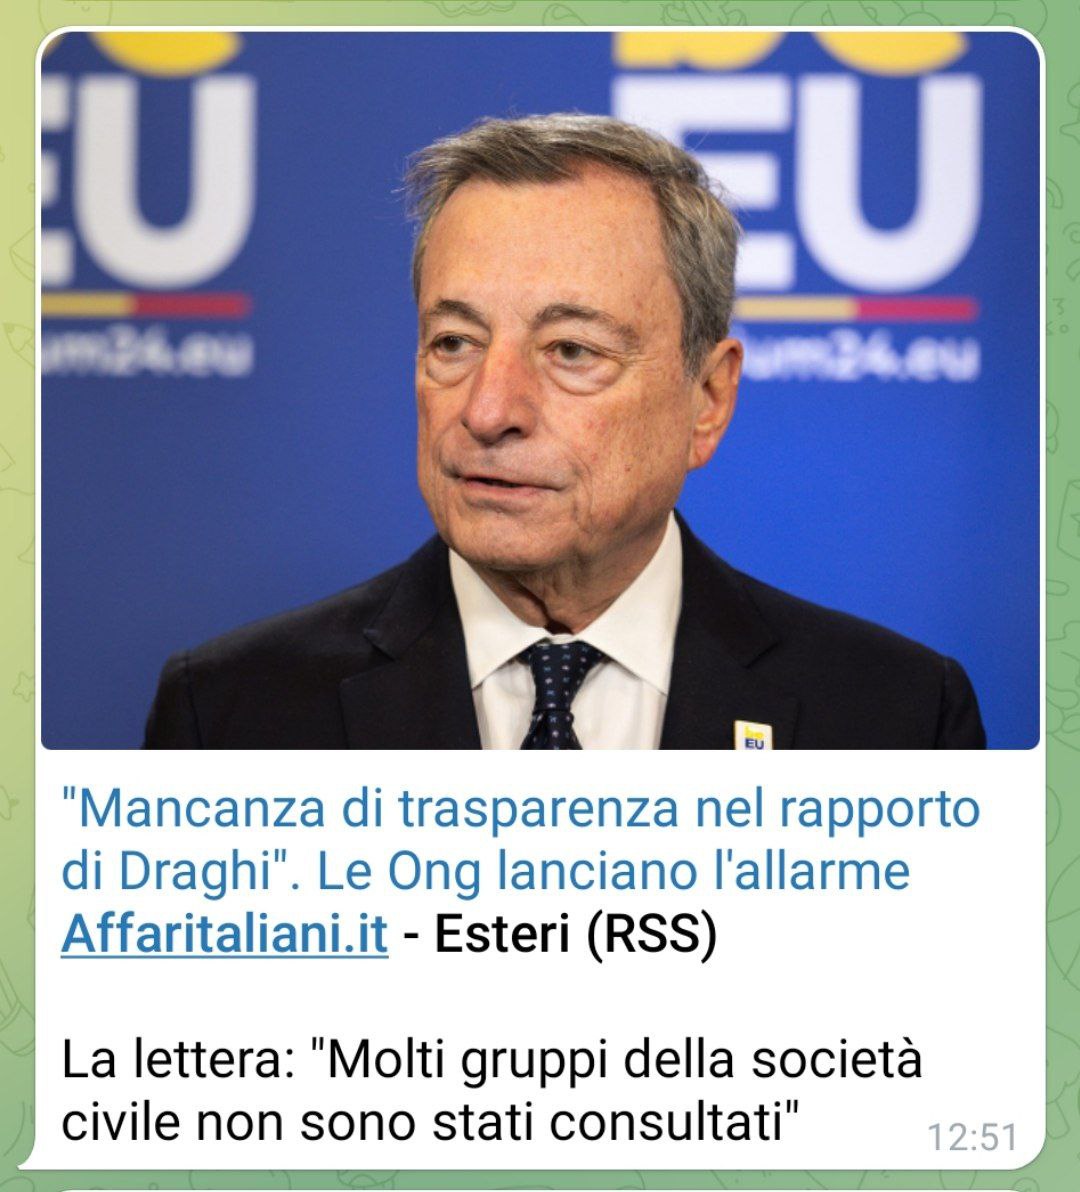 Movisol: Ong criticano Draghi per non averle consultate. Cosa ci nascondono?